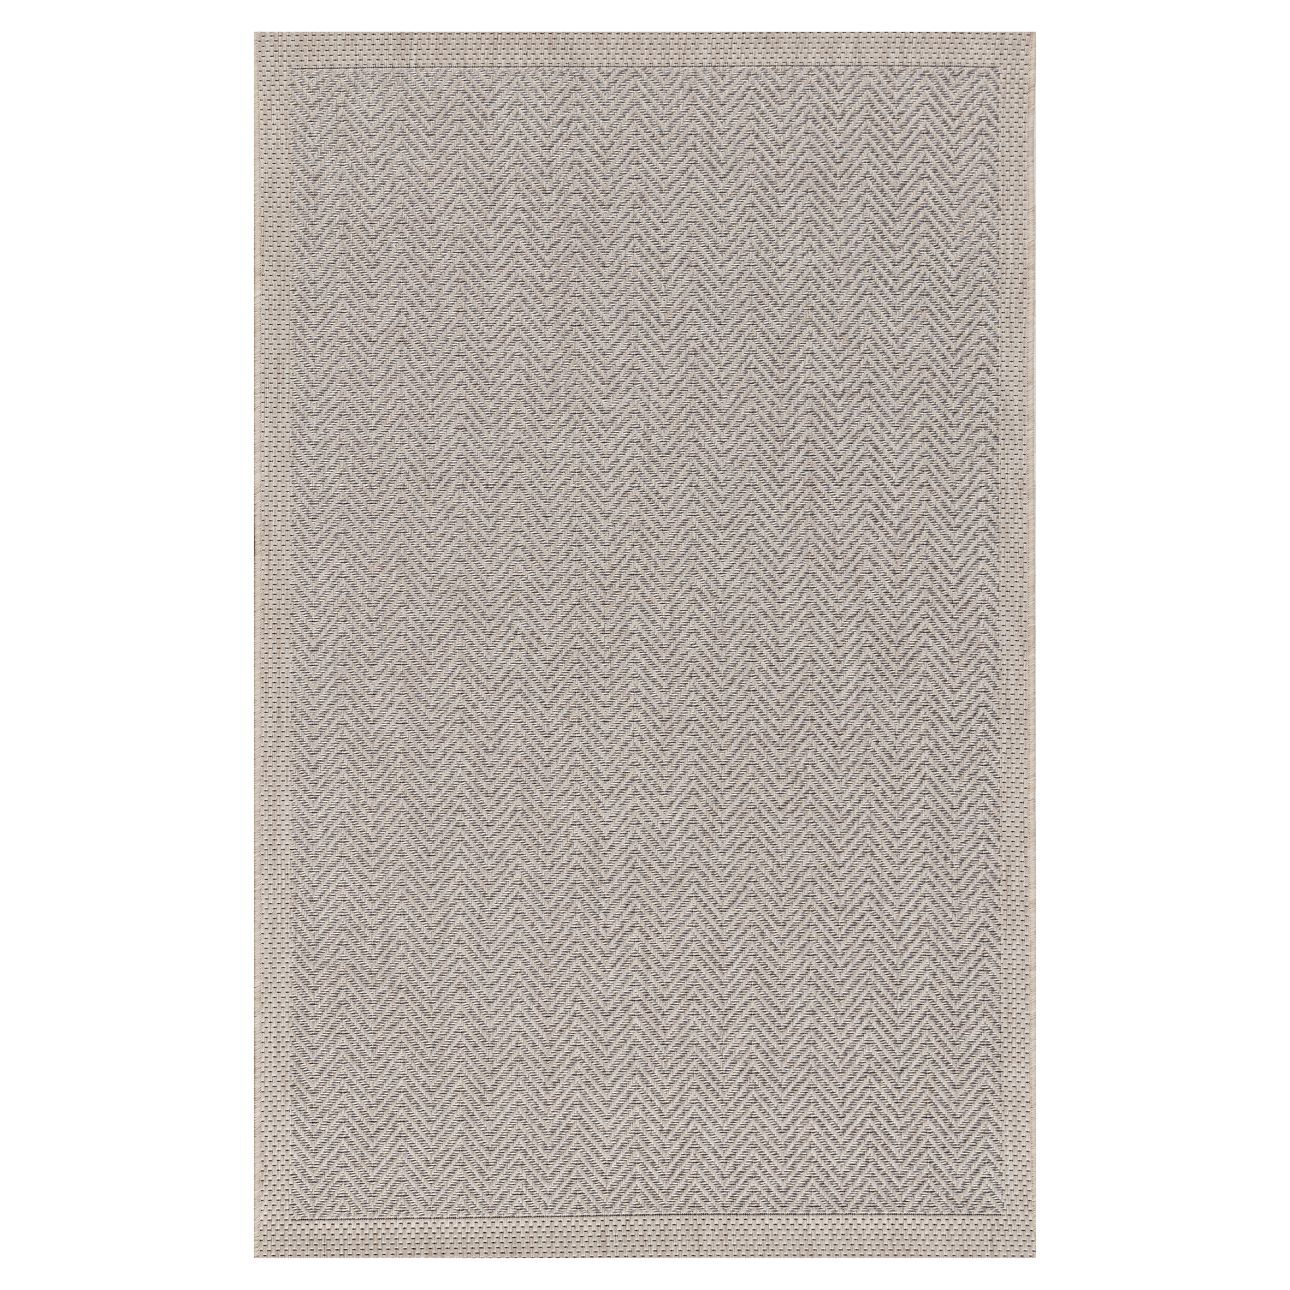 Teppich Breeze sand/ cliff grey 120x170cm, 120 x 170 cm günstig online kaufen